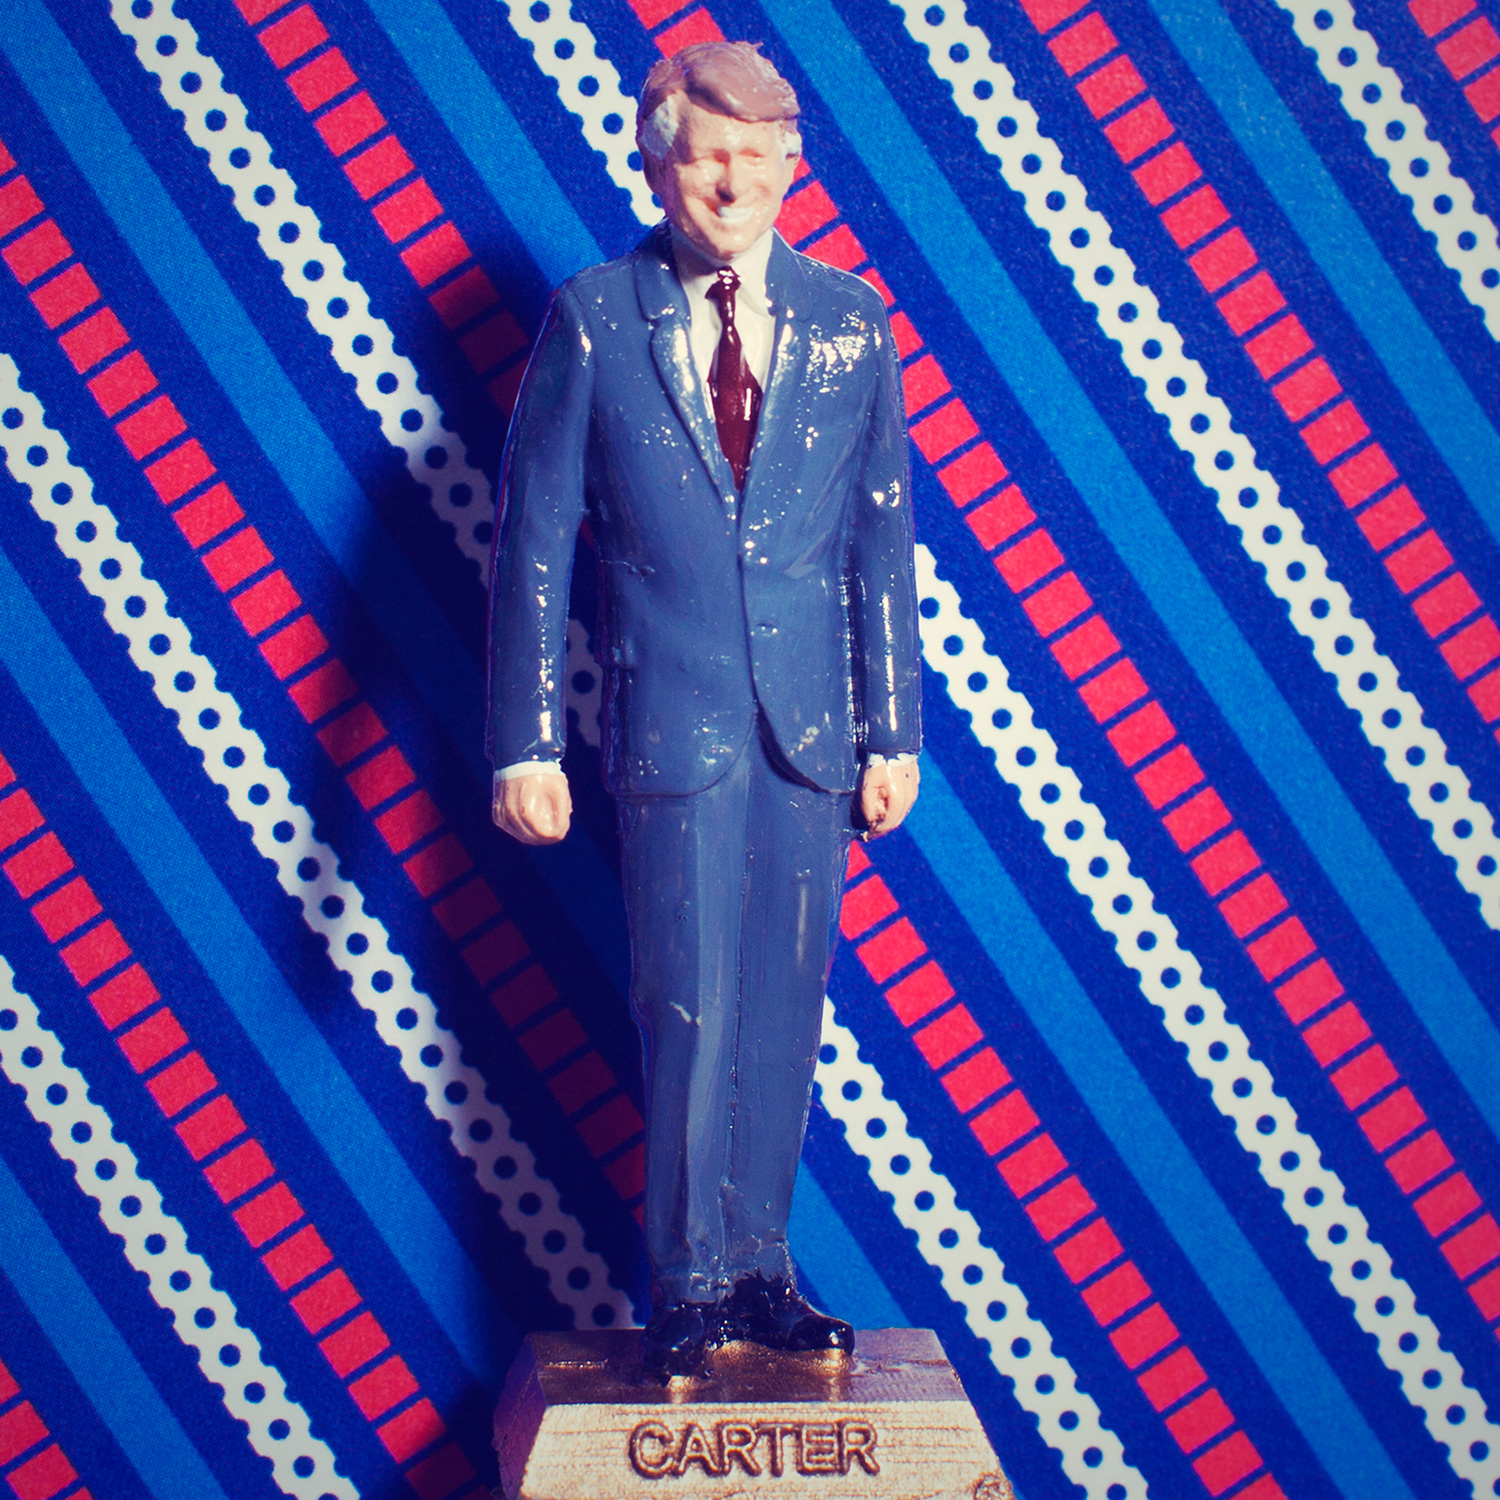 Jimmy Carter: Keeping the faith